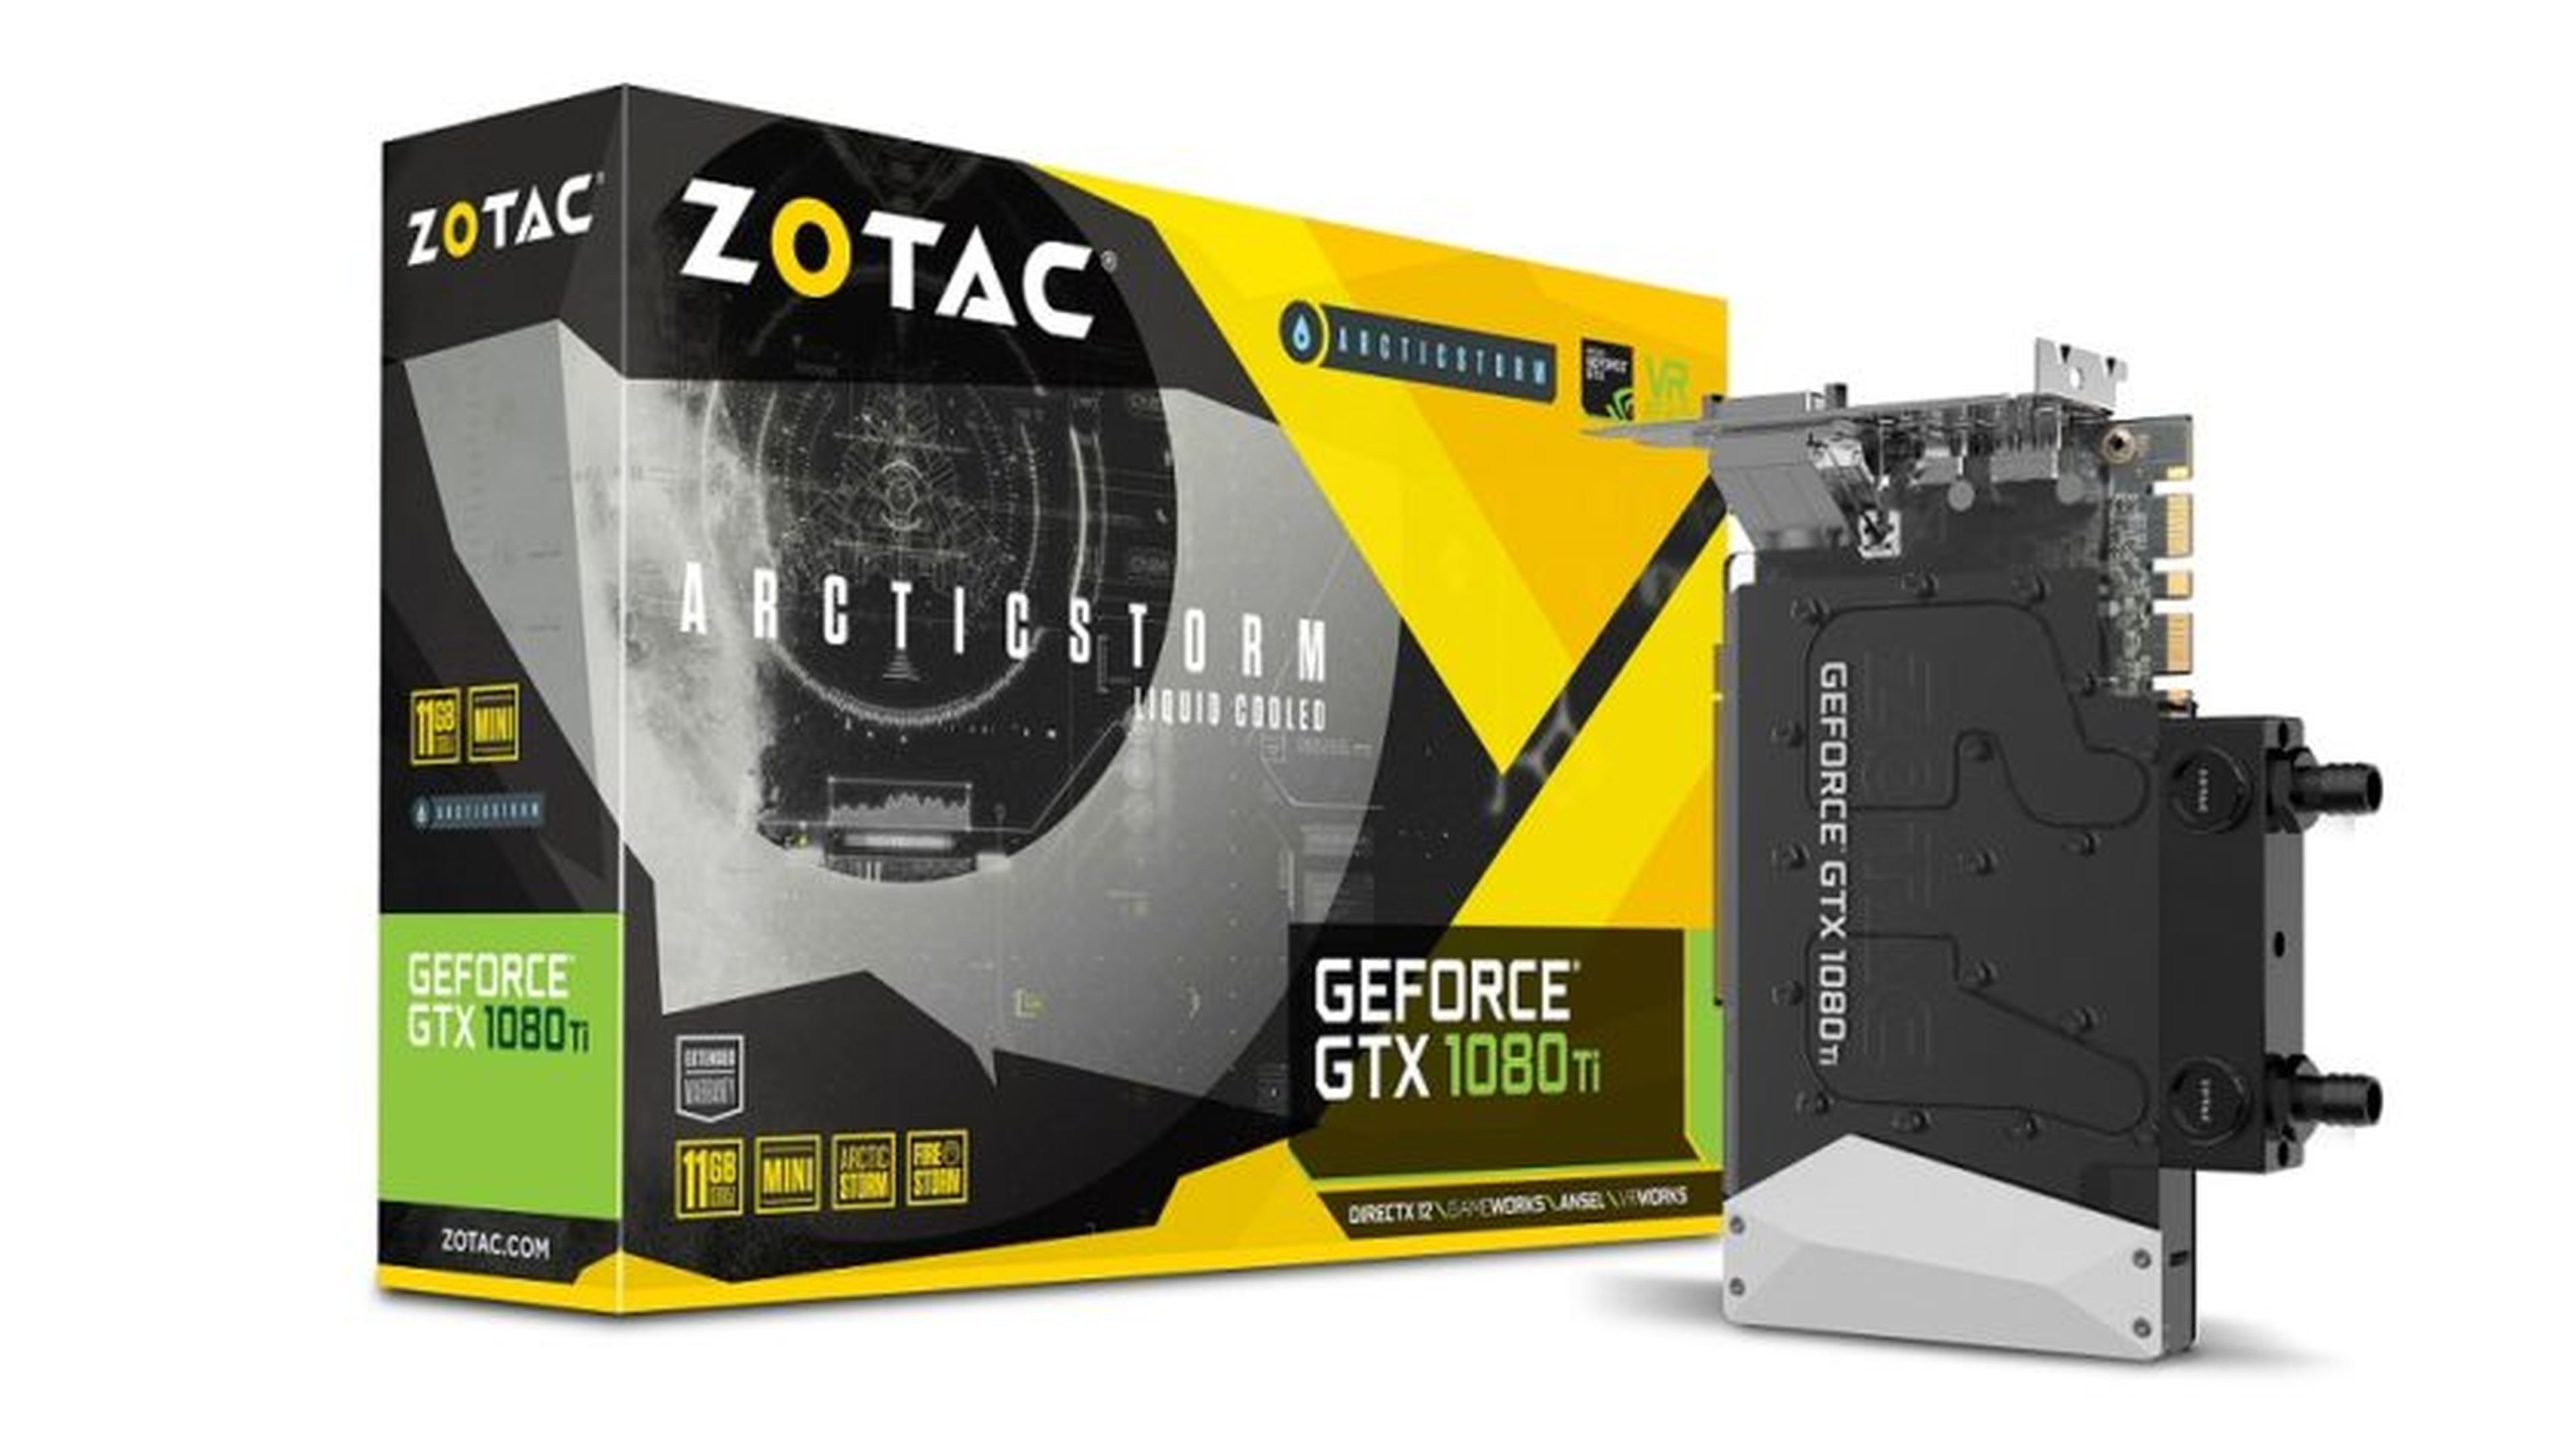 Zotac GTX 1080 Ti ArcticStorm Mini